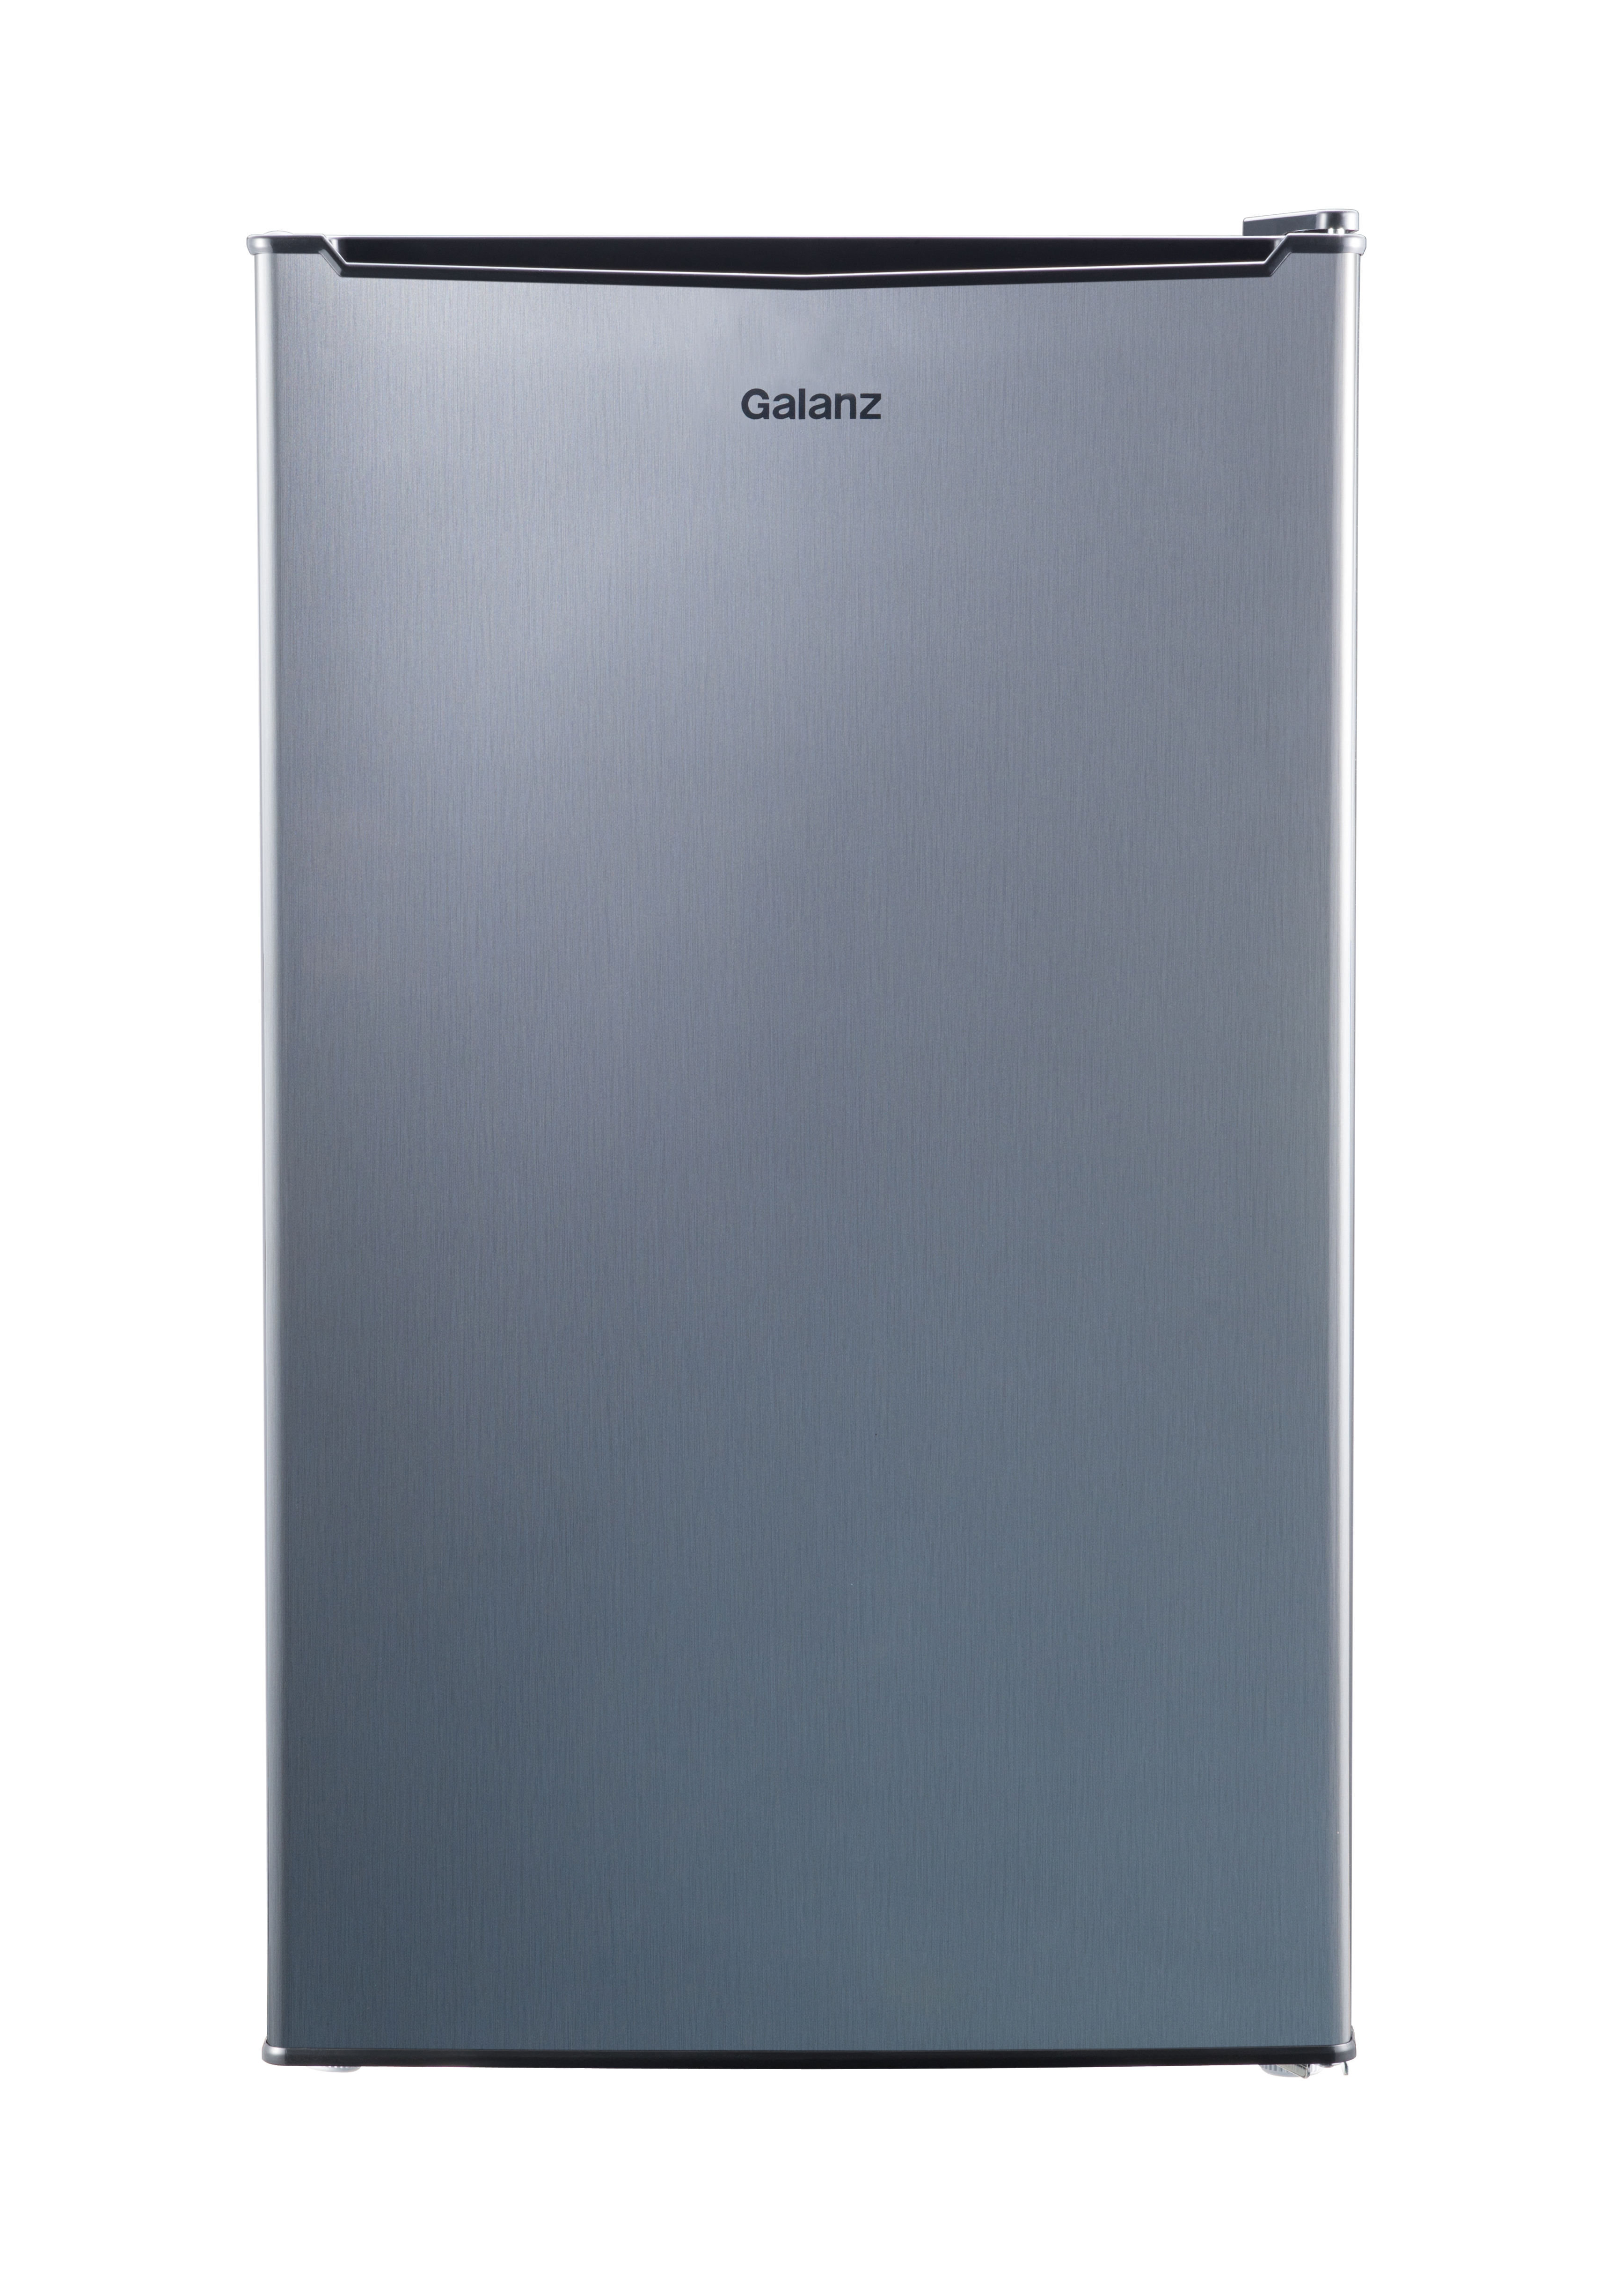 Galanz 3.3 Cu ft One Door Mini Fridge, Estar, Stainless Steel Look, New - image 1 of 8